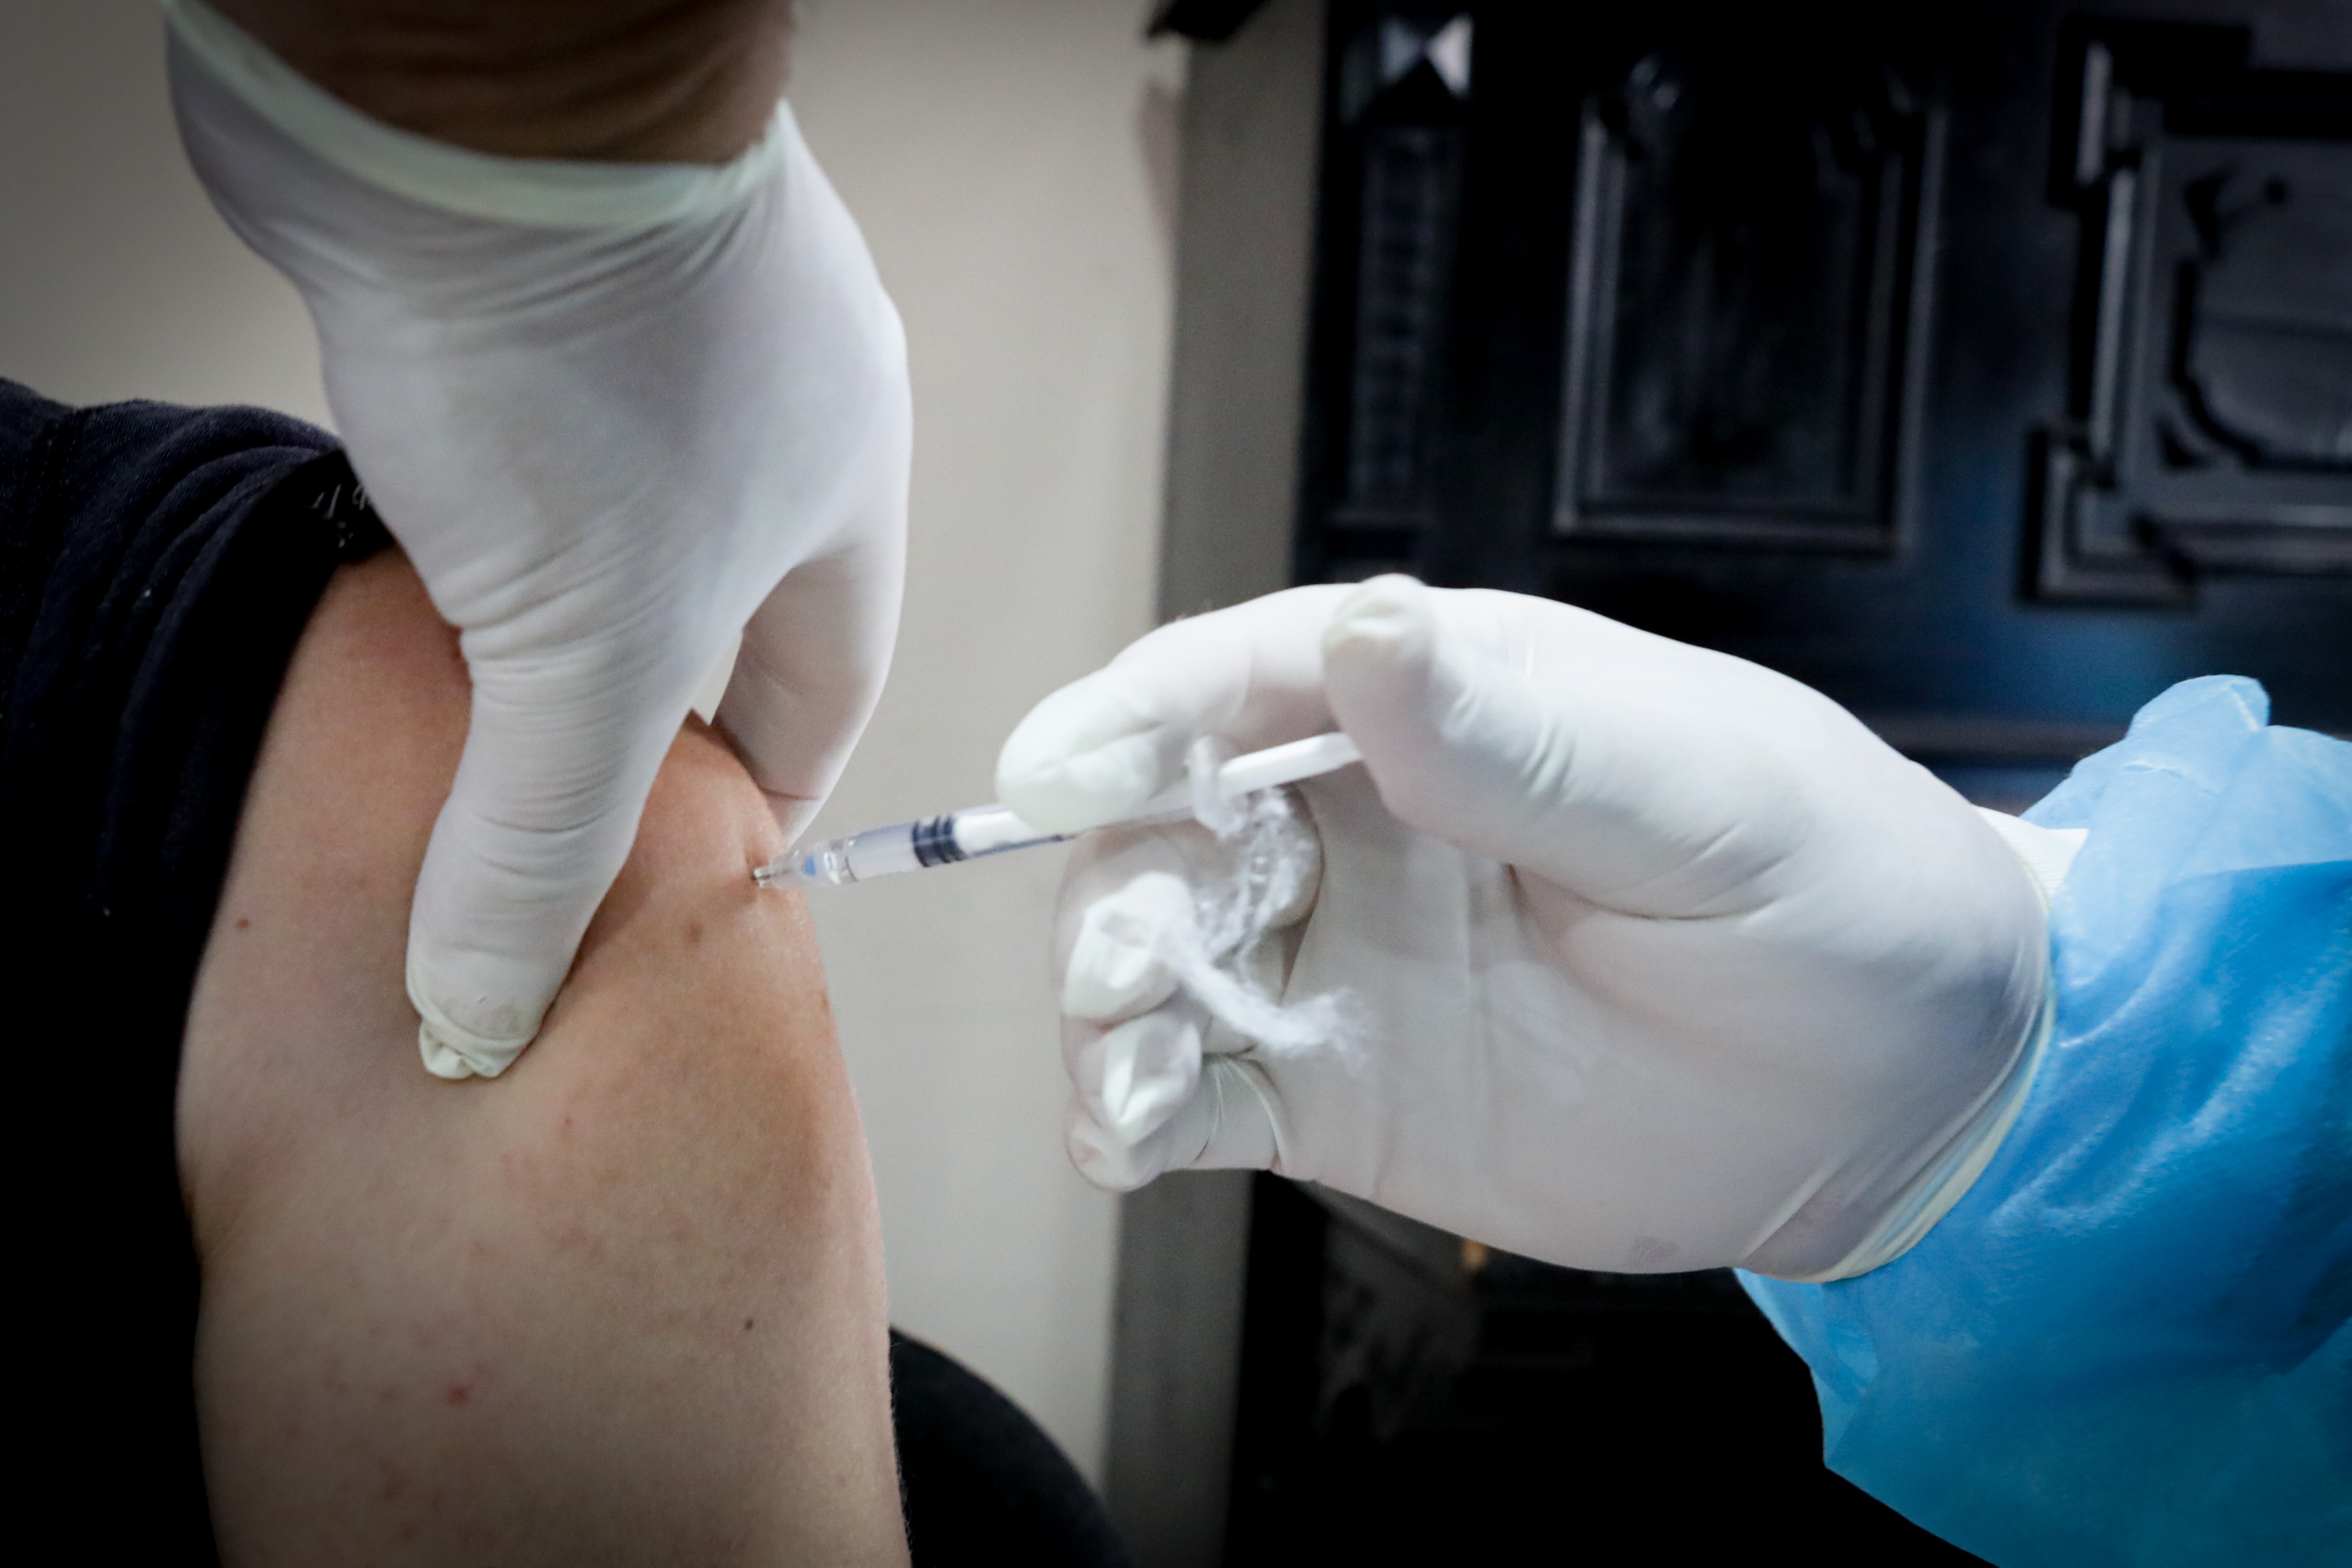 El Ministerio de Salud Pública emitió un "paso a paso" para recordarle a los turistas cómo acceder a la vacuna Pfizer en Uruguay

EFE/ Raúl Martínez
